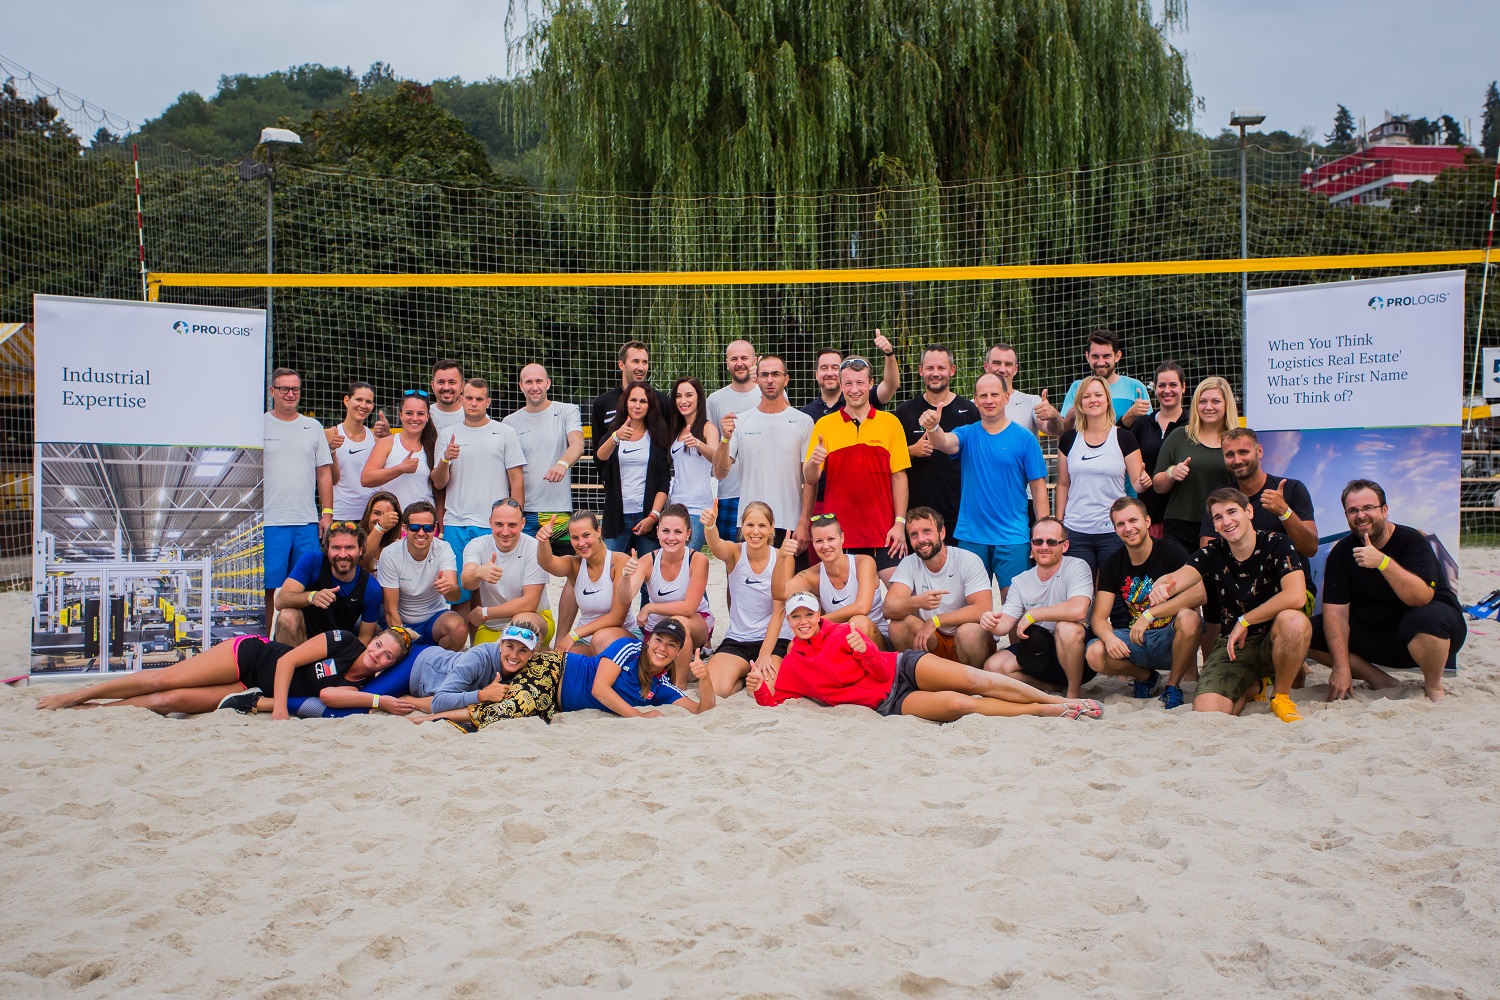 Prologis Volleyball Tournament 2018, Czech Republic 